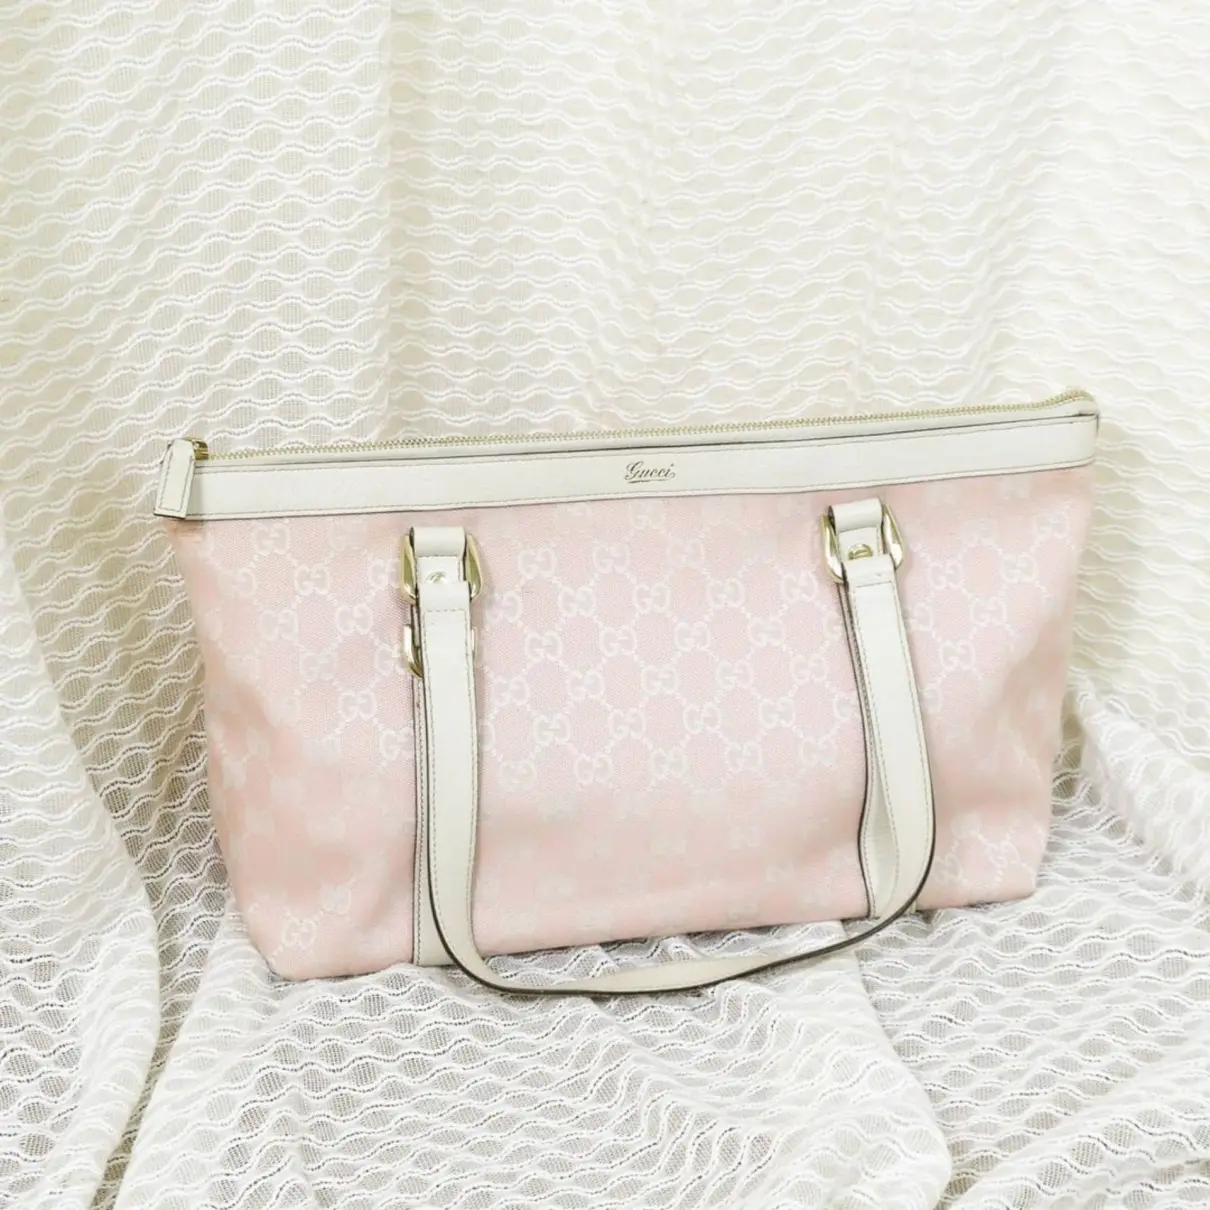 Abbey cloth handbag Gucci - Vintage